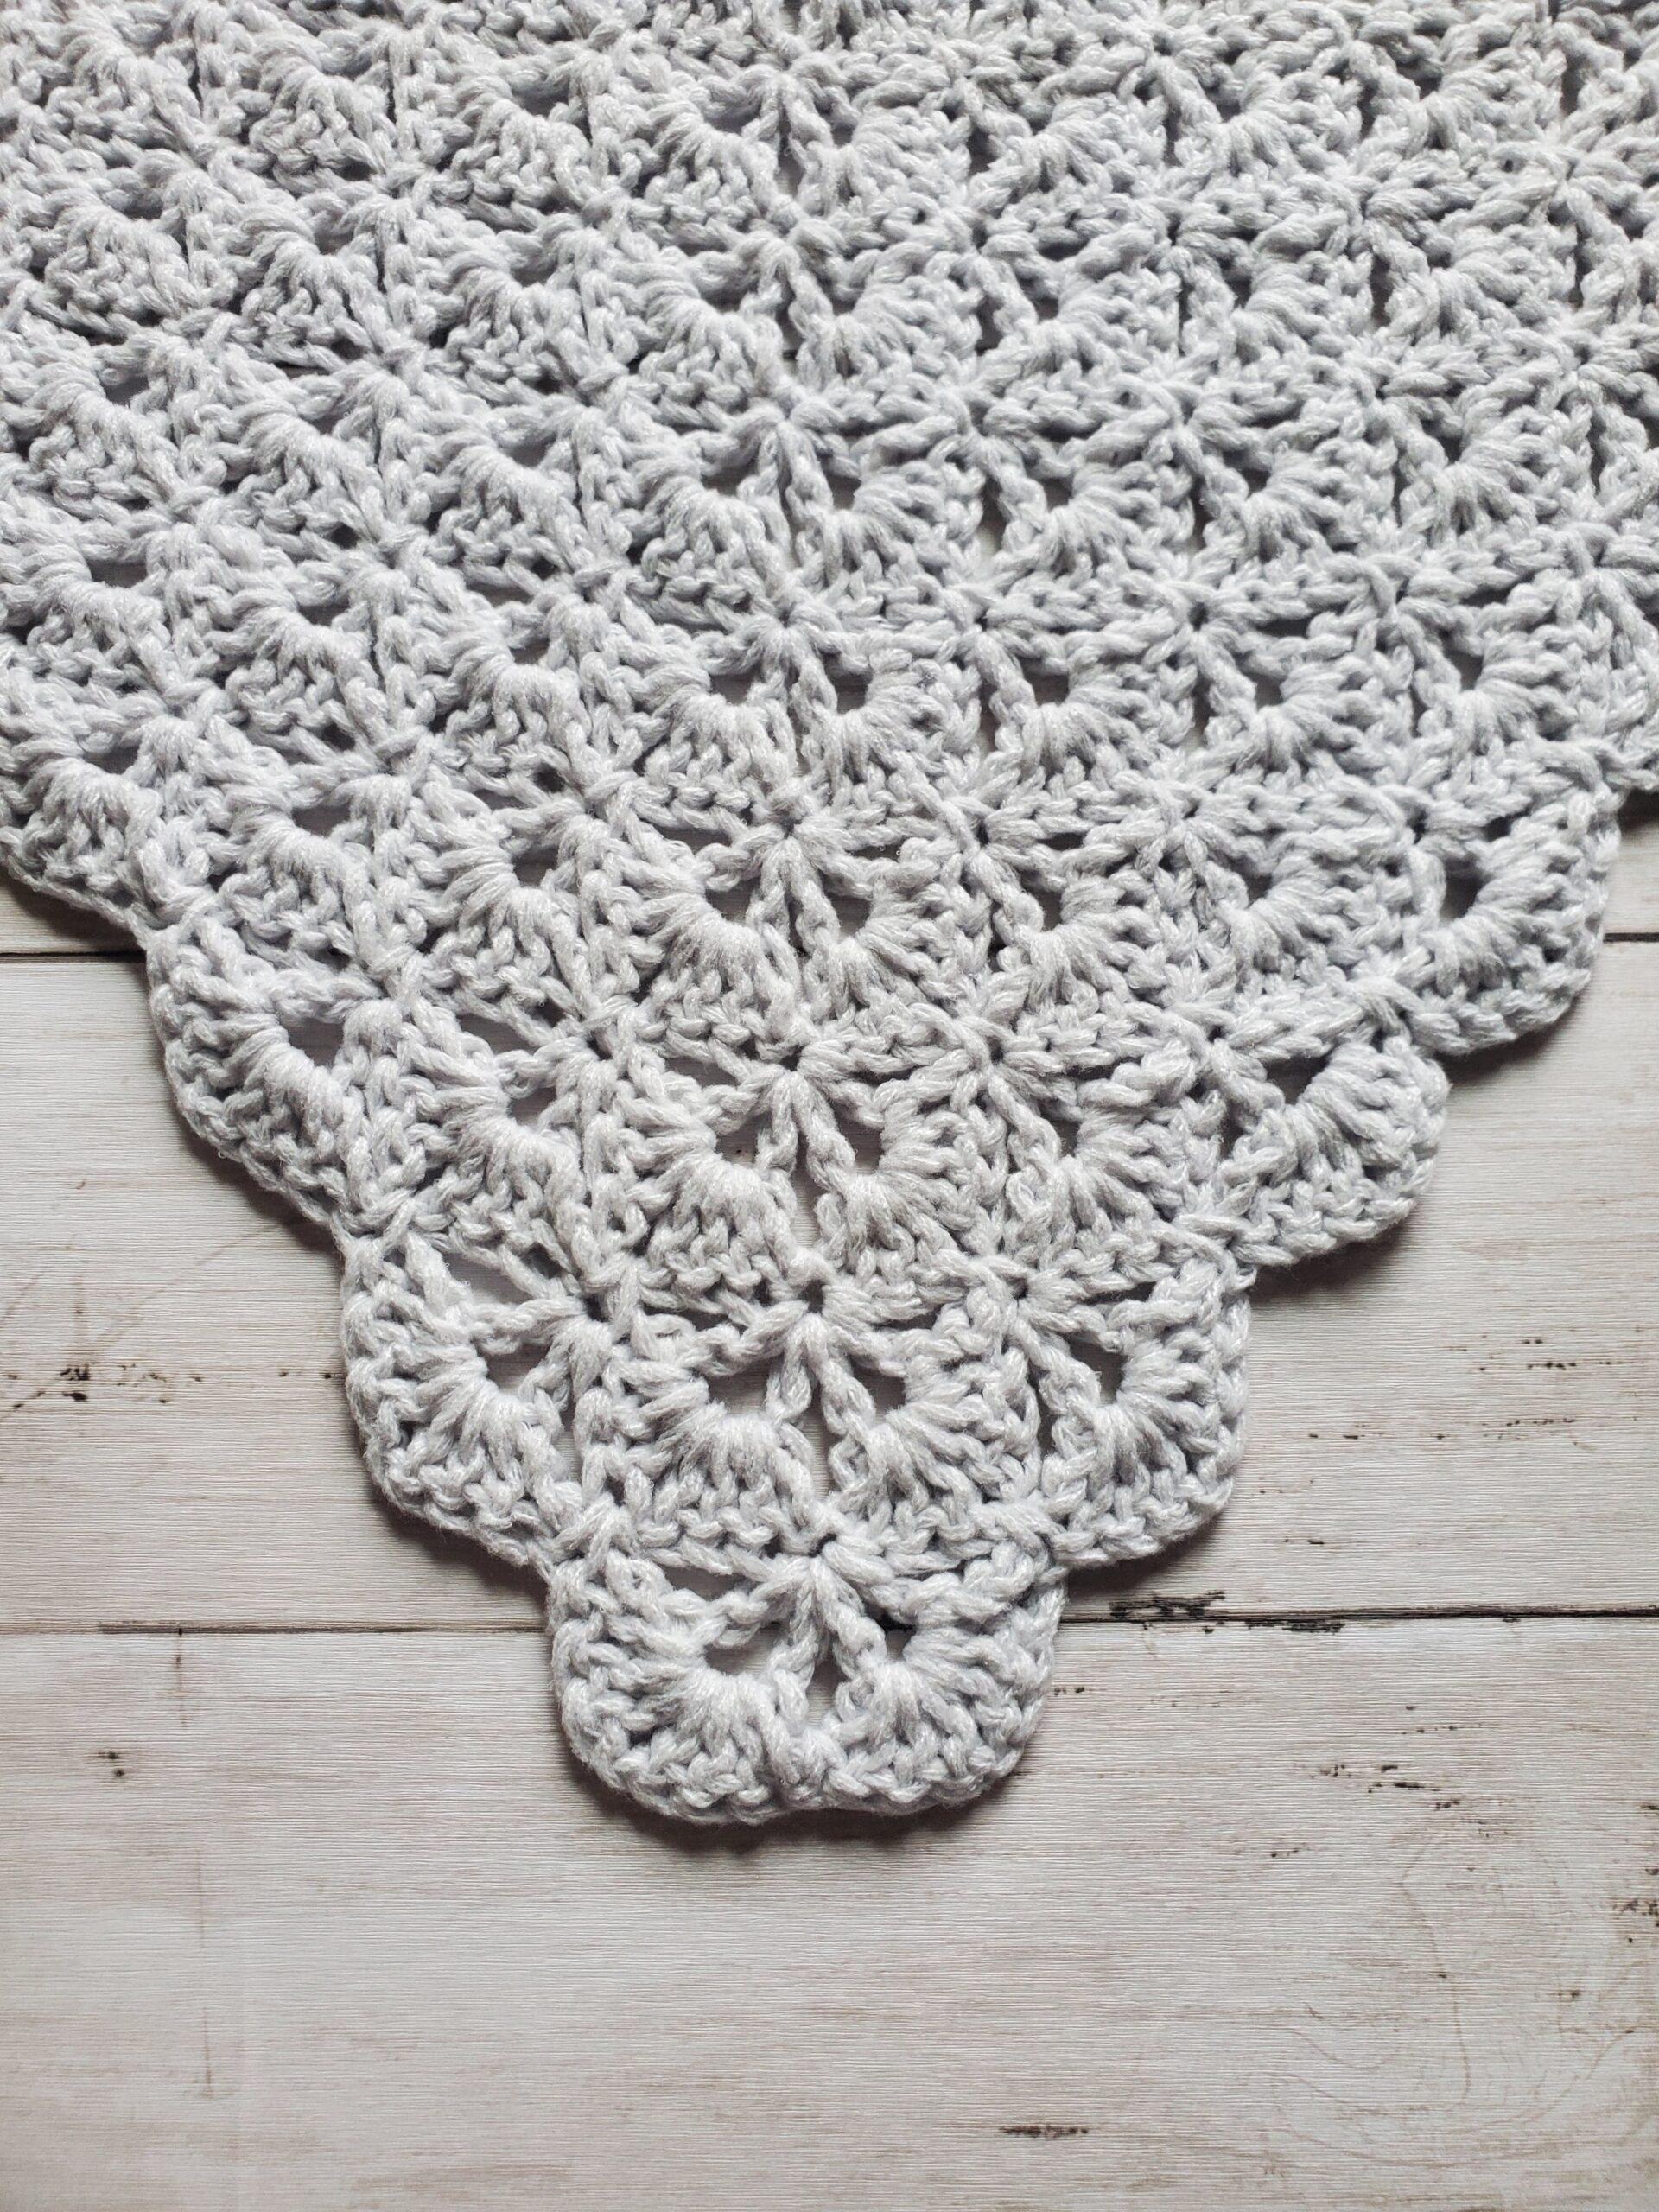 Feels Like Butta Yarn Crochet Patterns - Easy Crochet